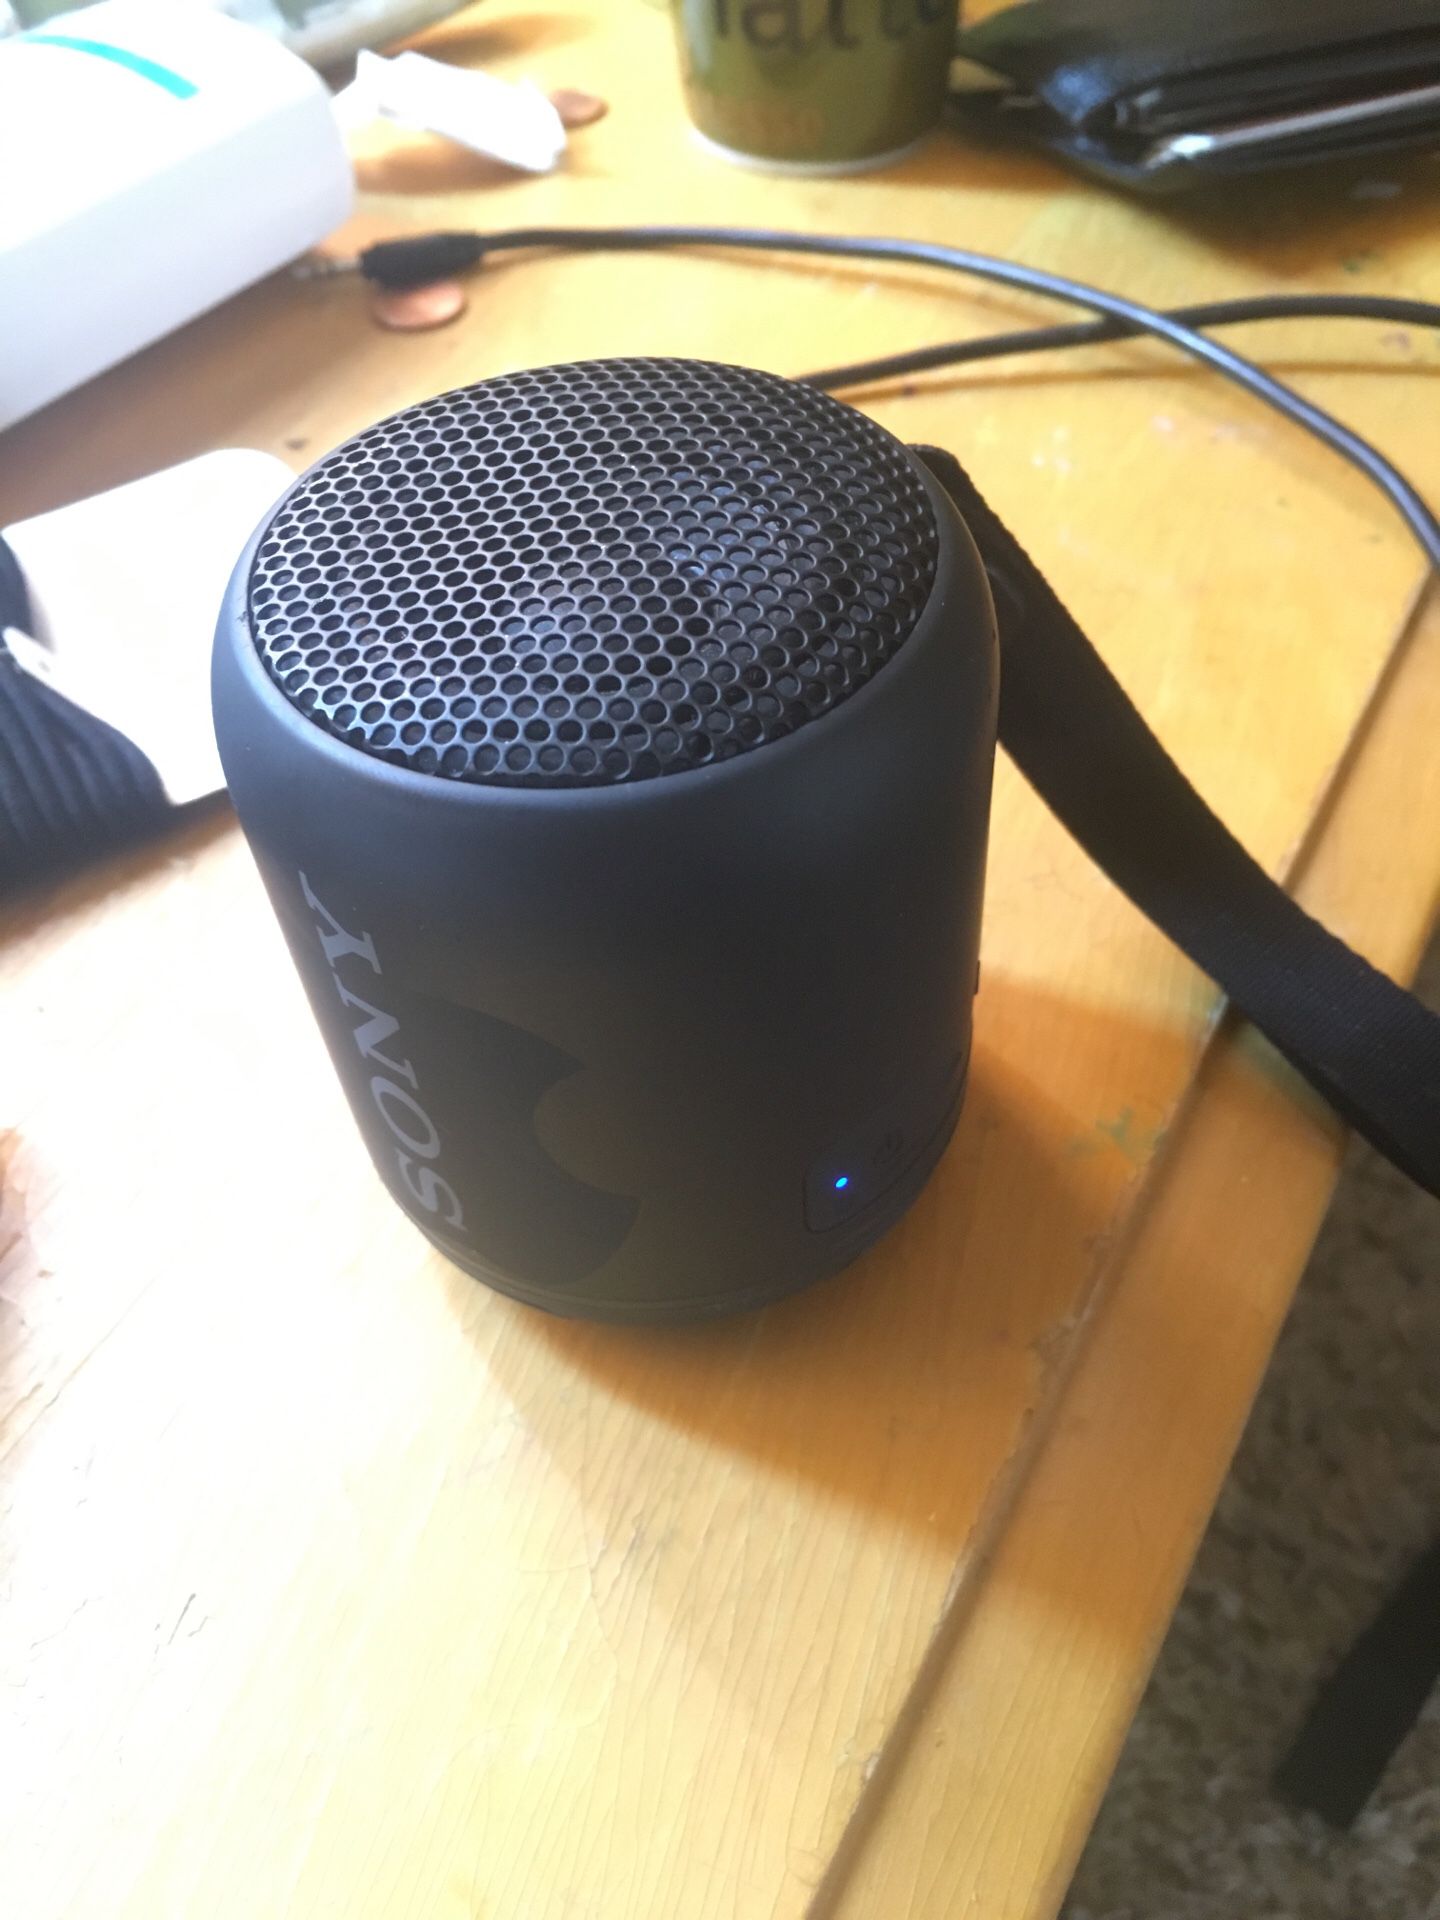 Sony Bluetooth speaker w aux